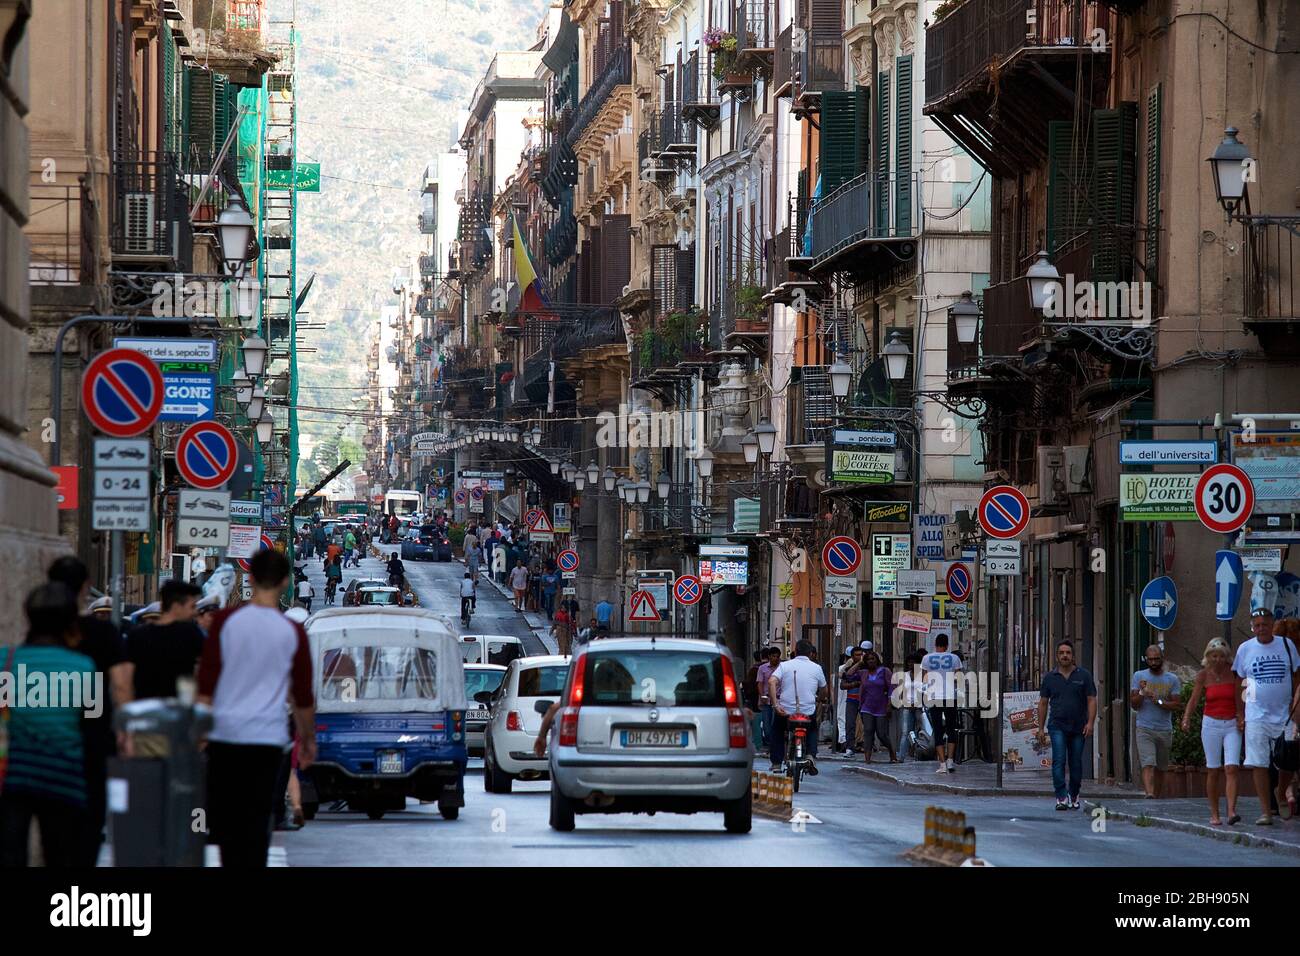 Palermo, Altstadt, Straße, Häuser mit Balkonen links und rechts der Straße Foto Stock